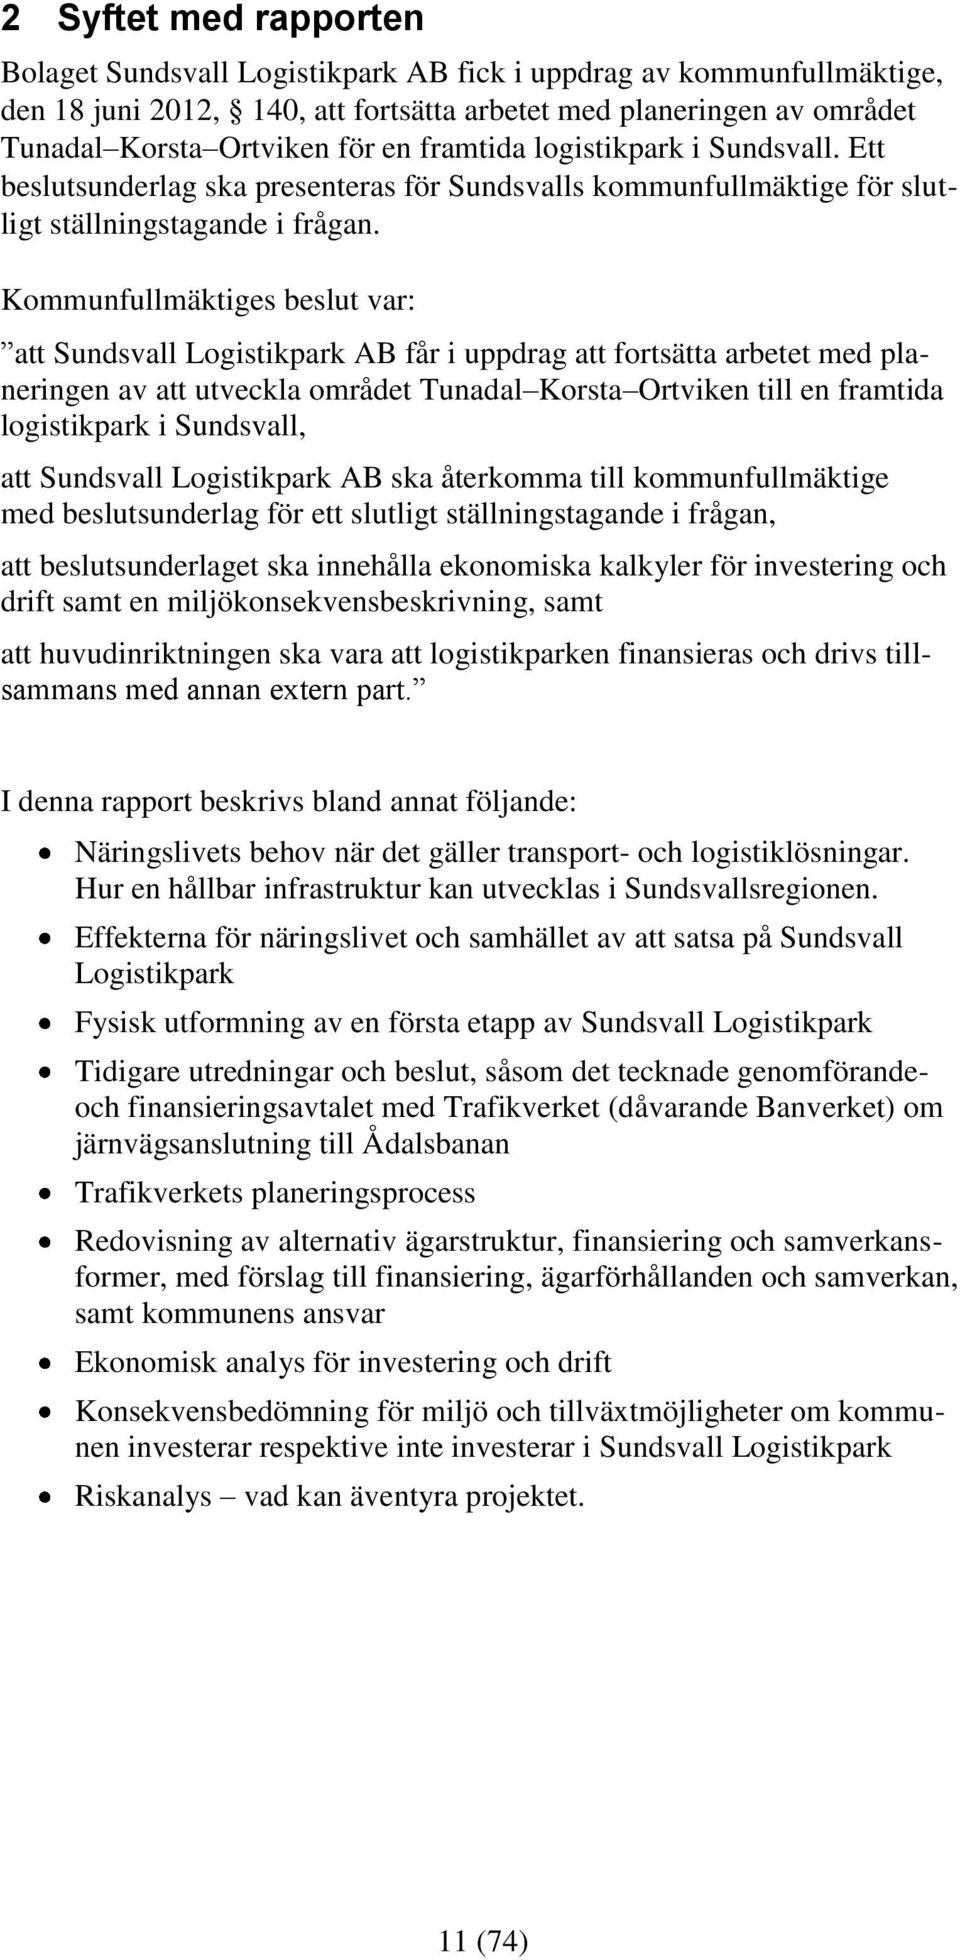 Kommunfullmäktiges beslut var: att Sundsvall Logistikpark AB får i uppdrag att fortsätta arbetet med planeringen av att utveckla området Tunadal Korsta Ortviken till en framtida logistikpark i